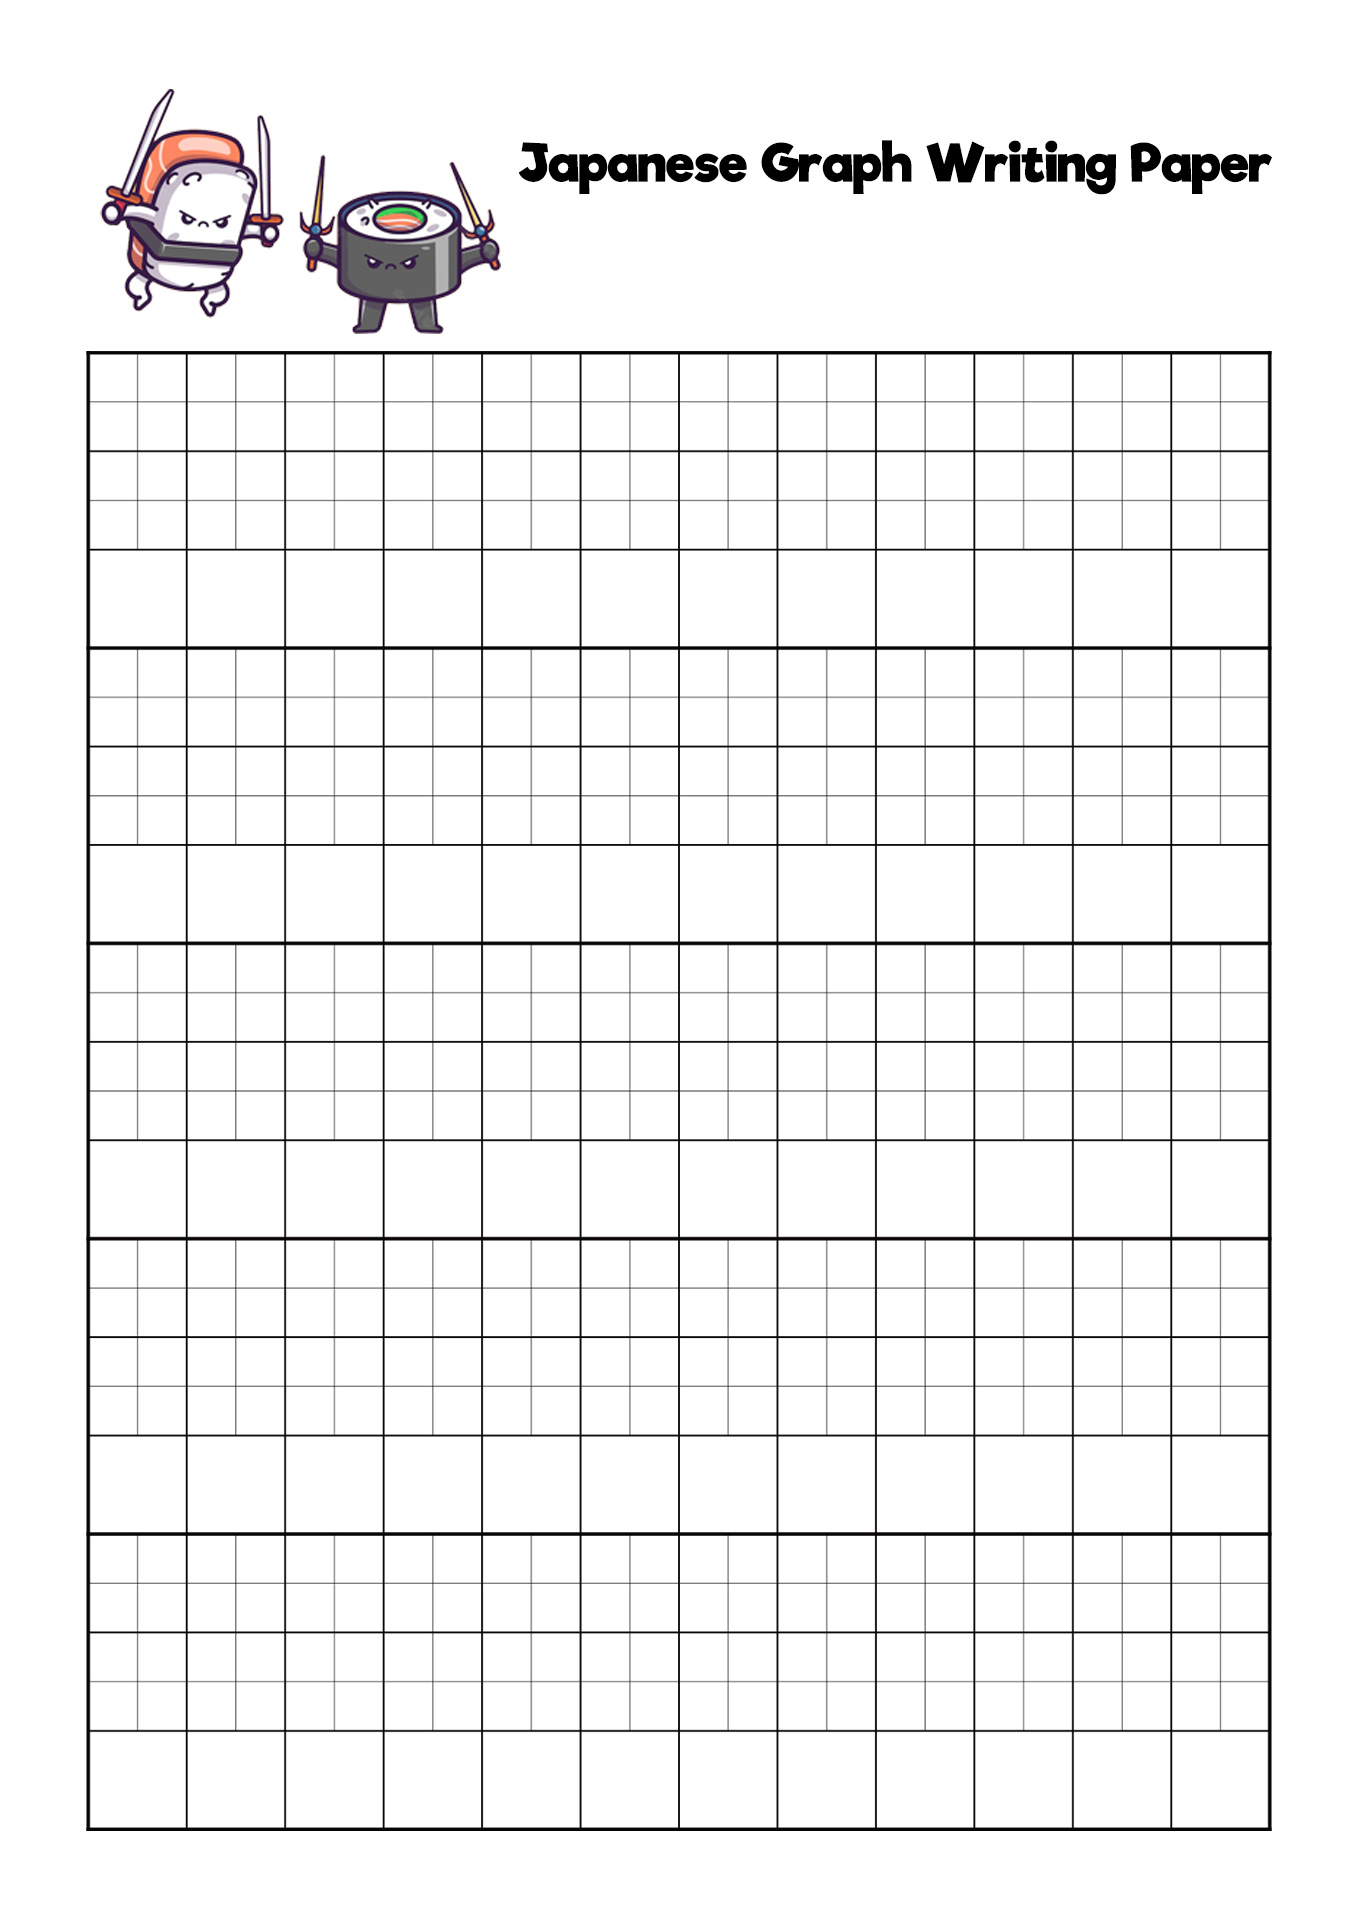 Blank Hiragana Writing Practice Sheets Image